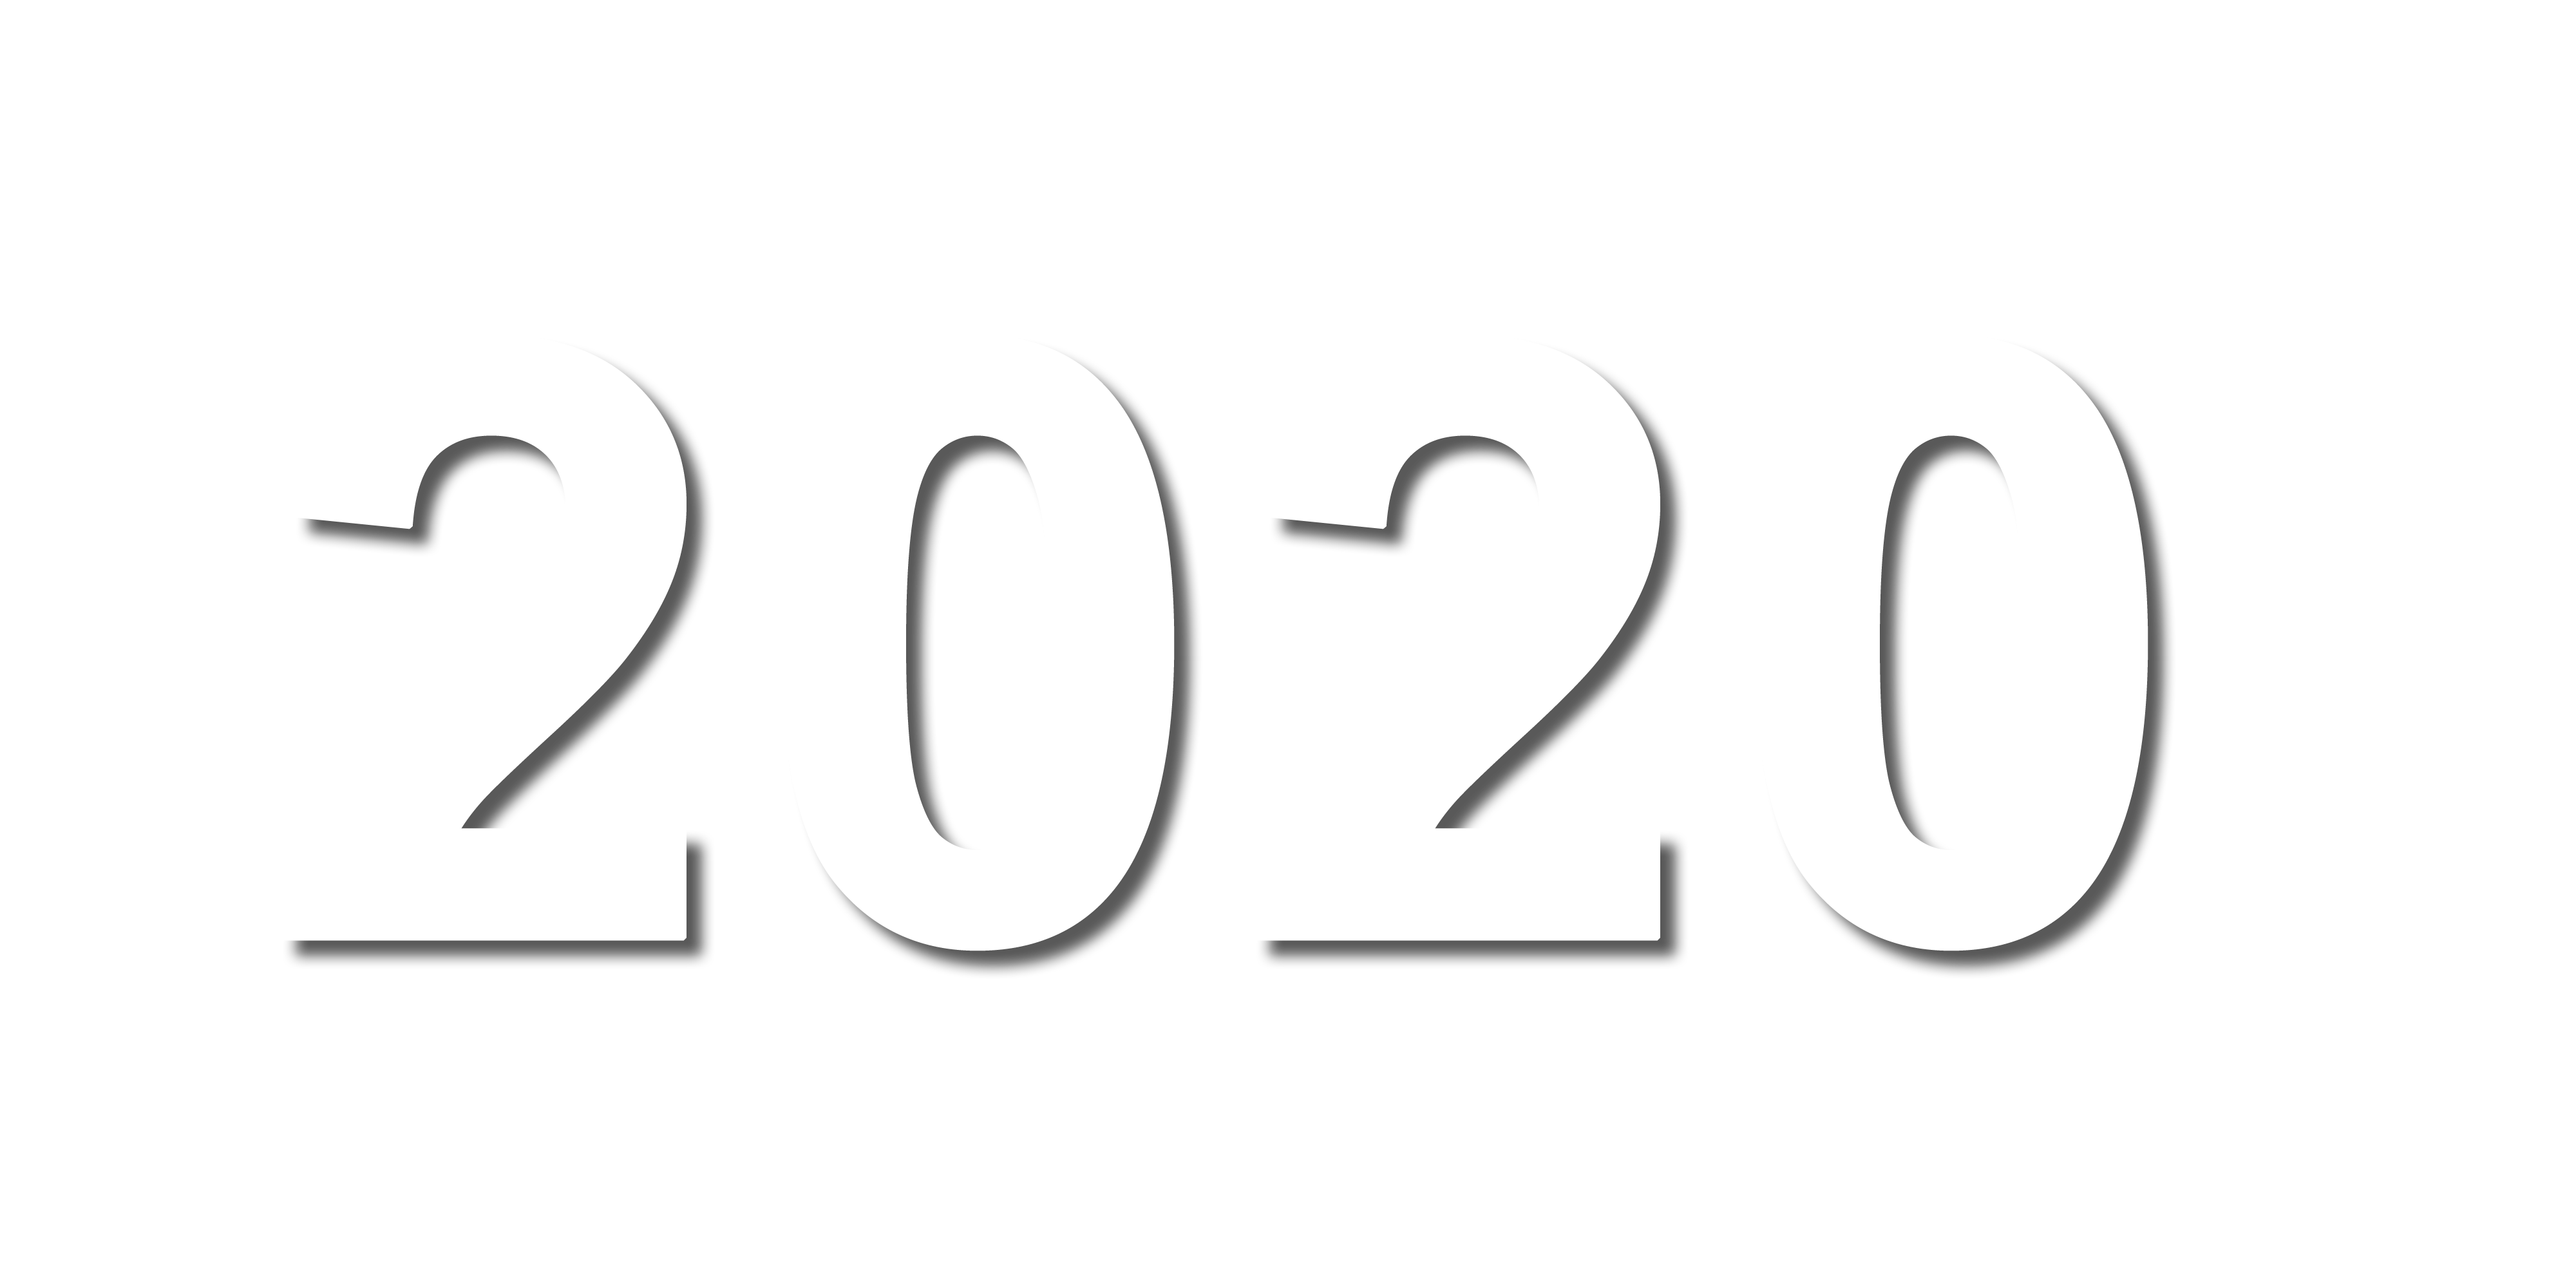 ปี 2020